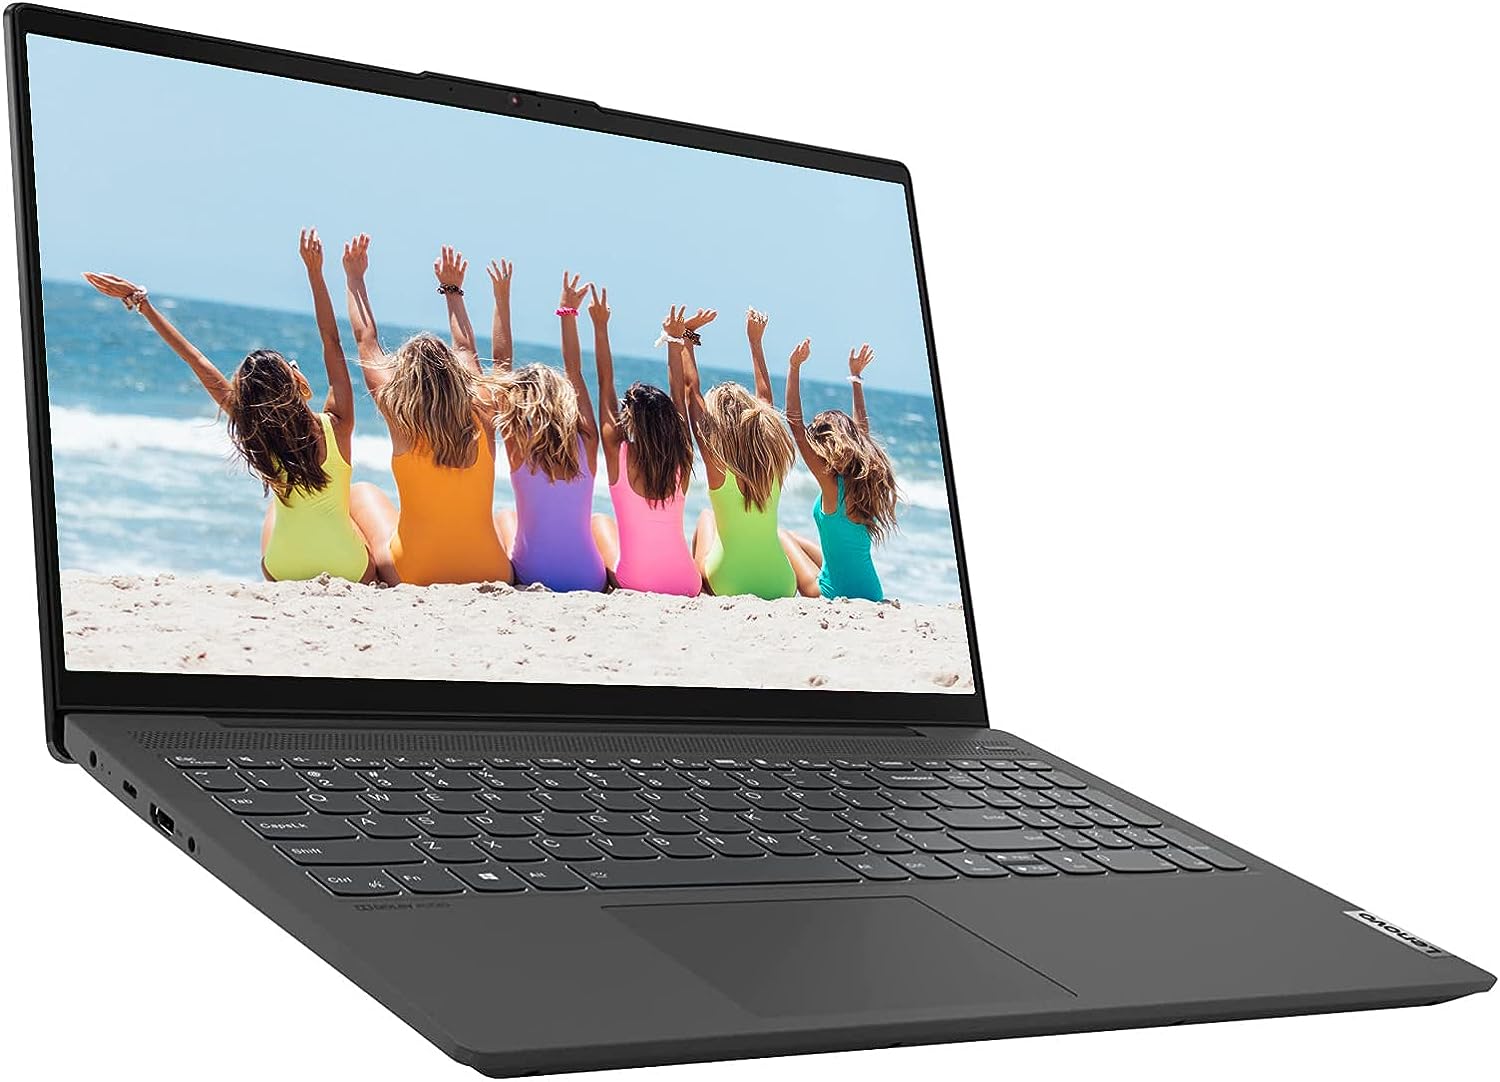 Lenovo IdeaPad 5i 15.6″ Laptop Review